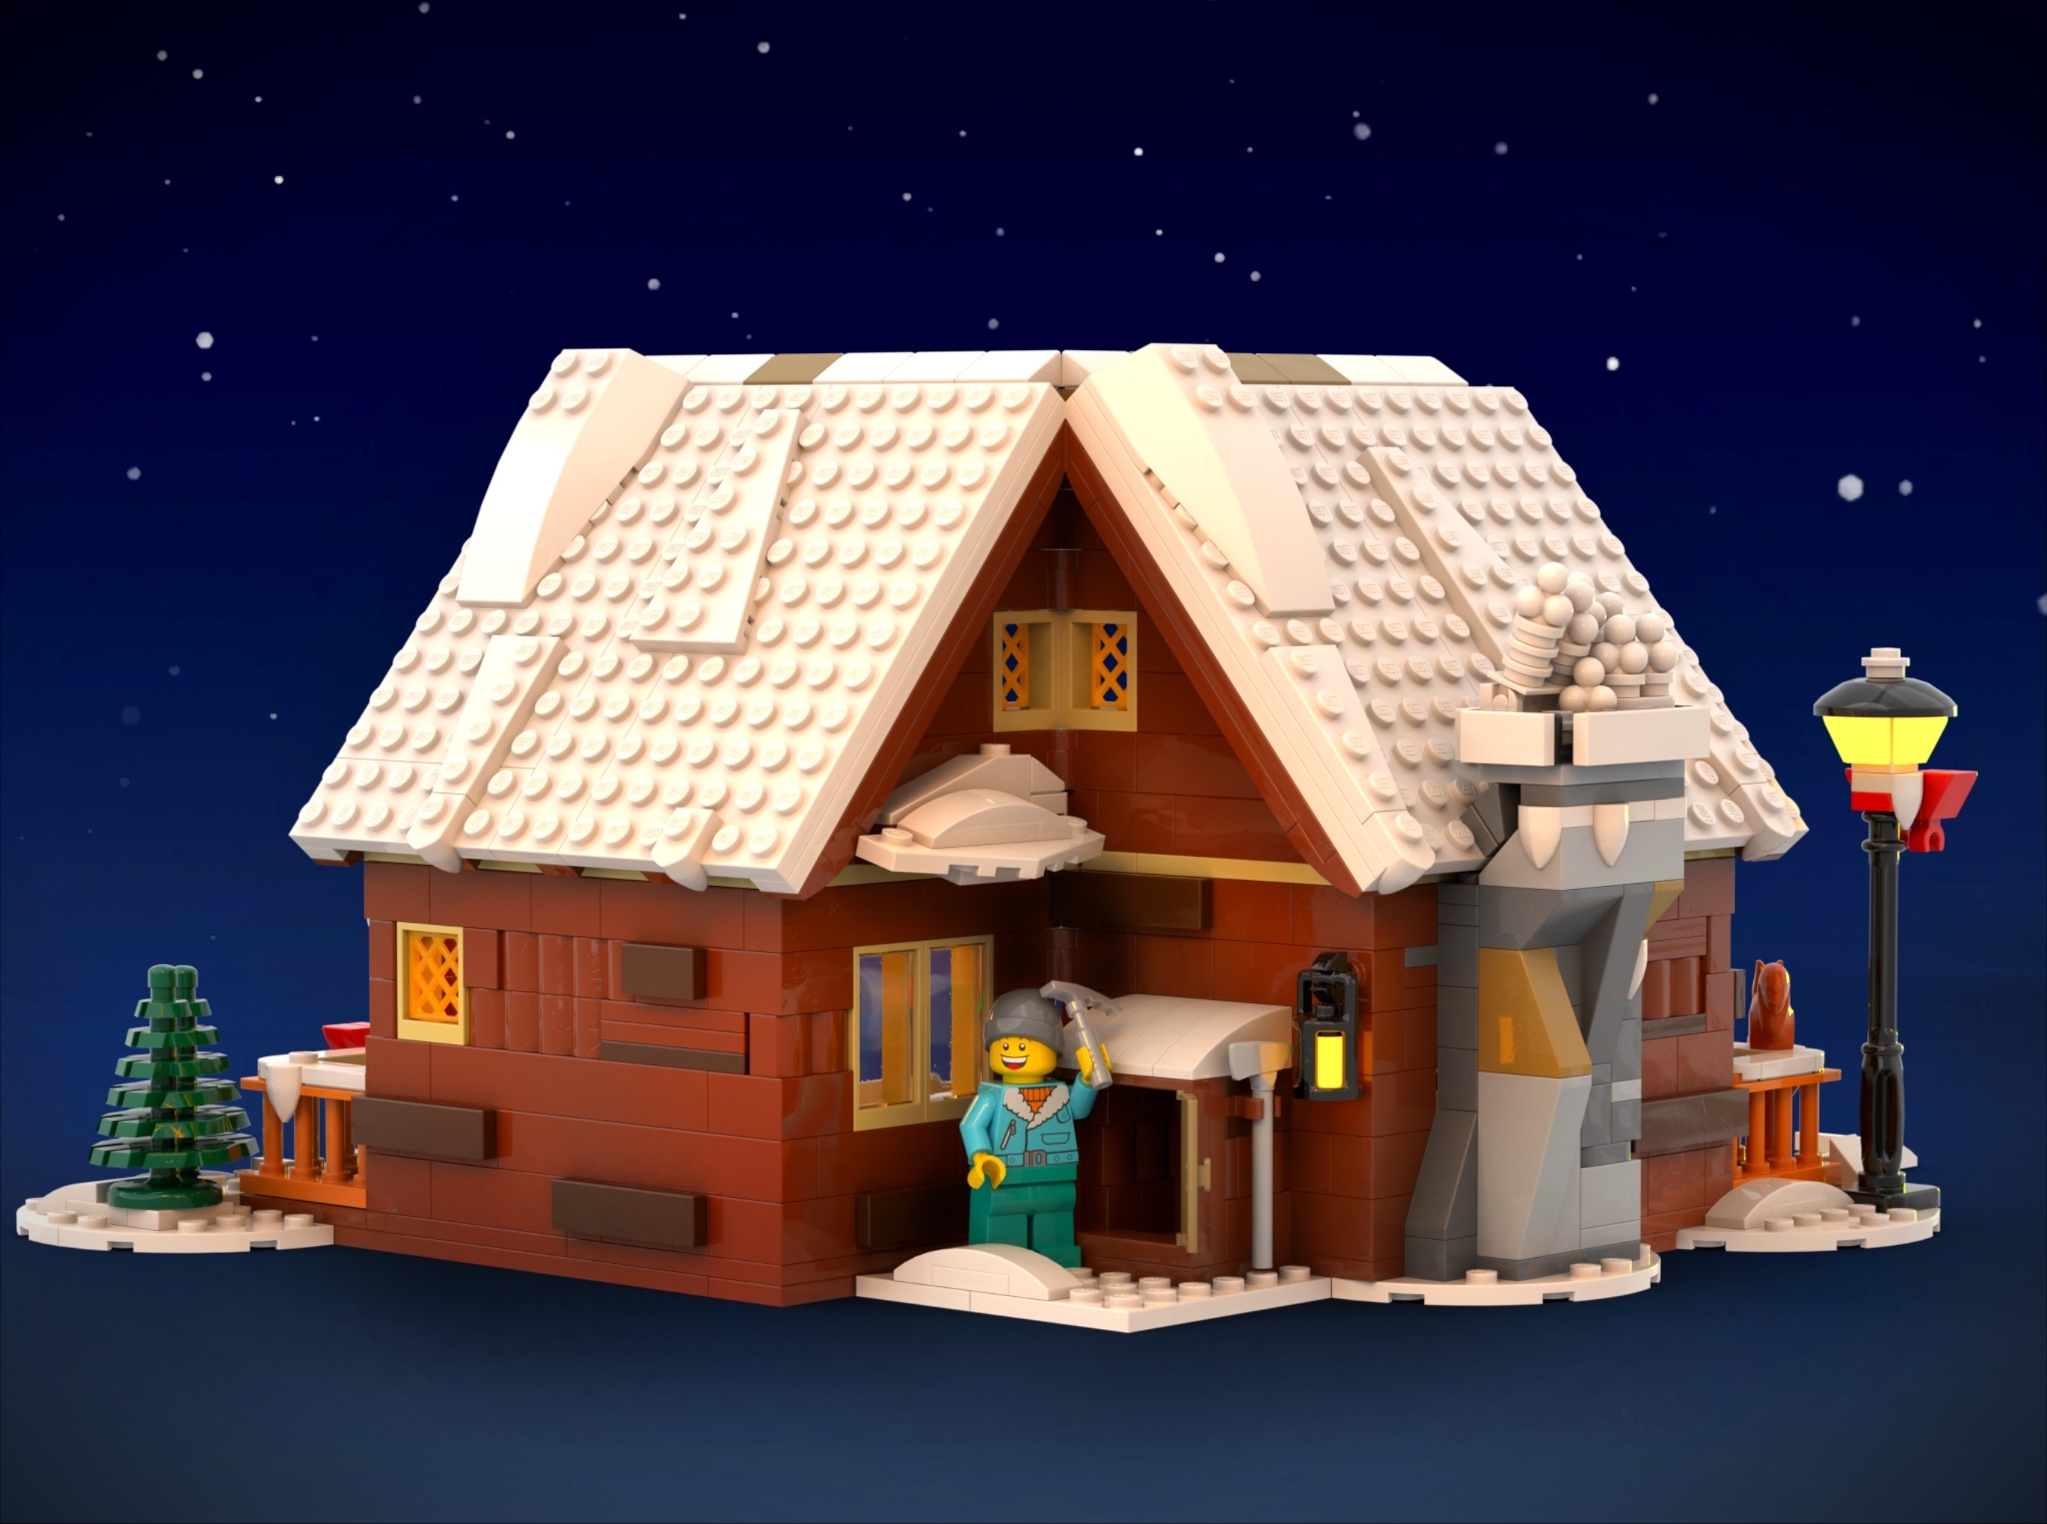 The Little Winter Cottage] [BrickLink]